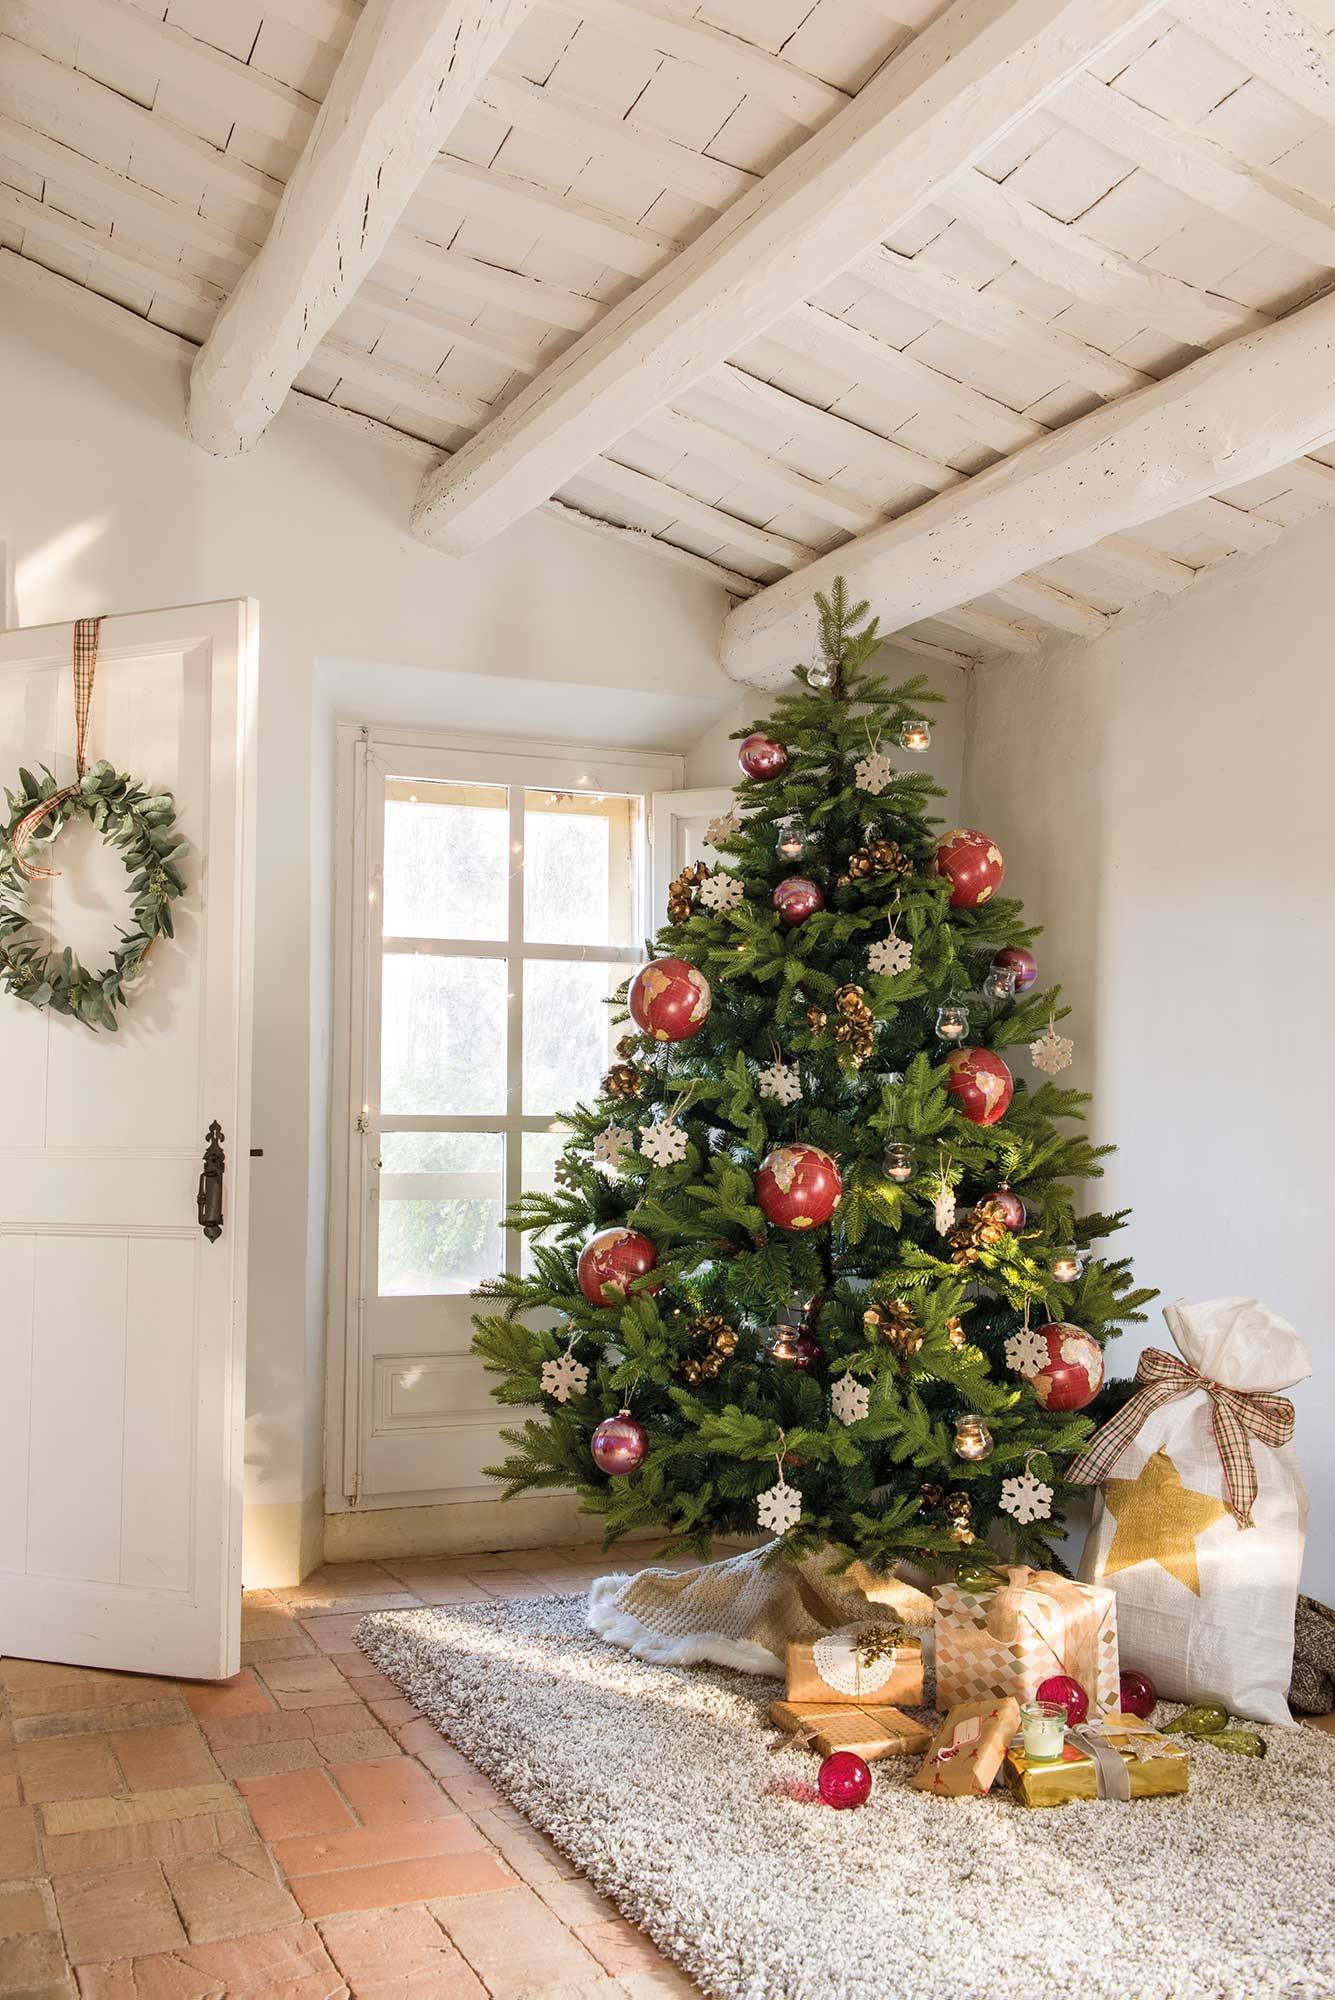 Recibidor con árbol de Navidad decorado con adornos, alfombra y techo con vigas de madera en blanco. 